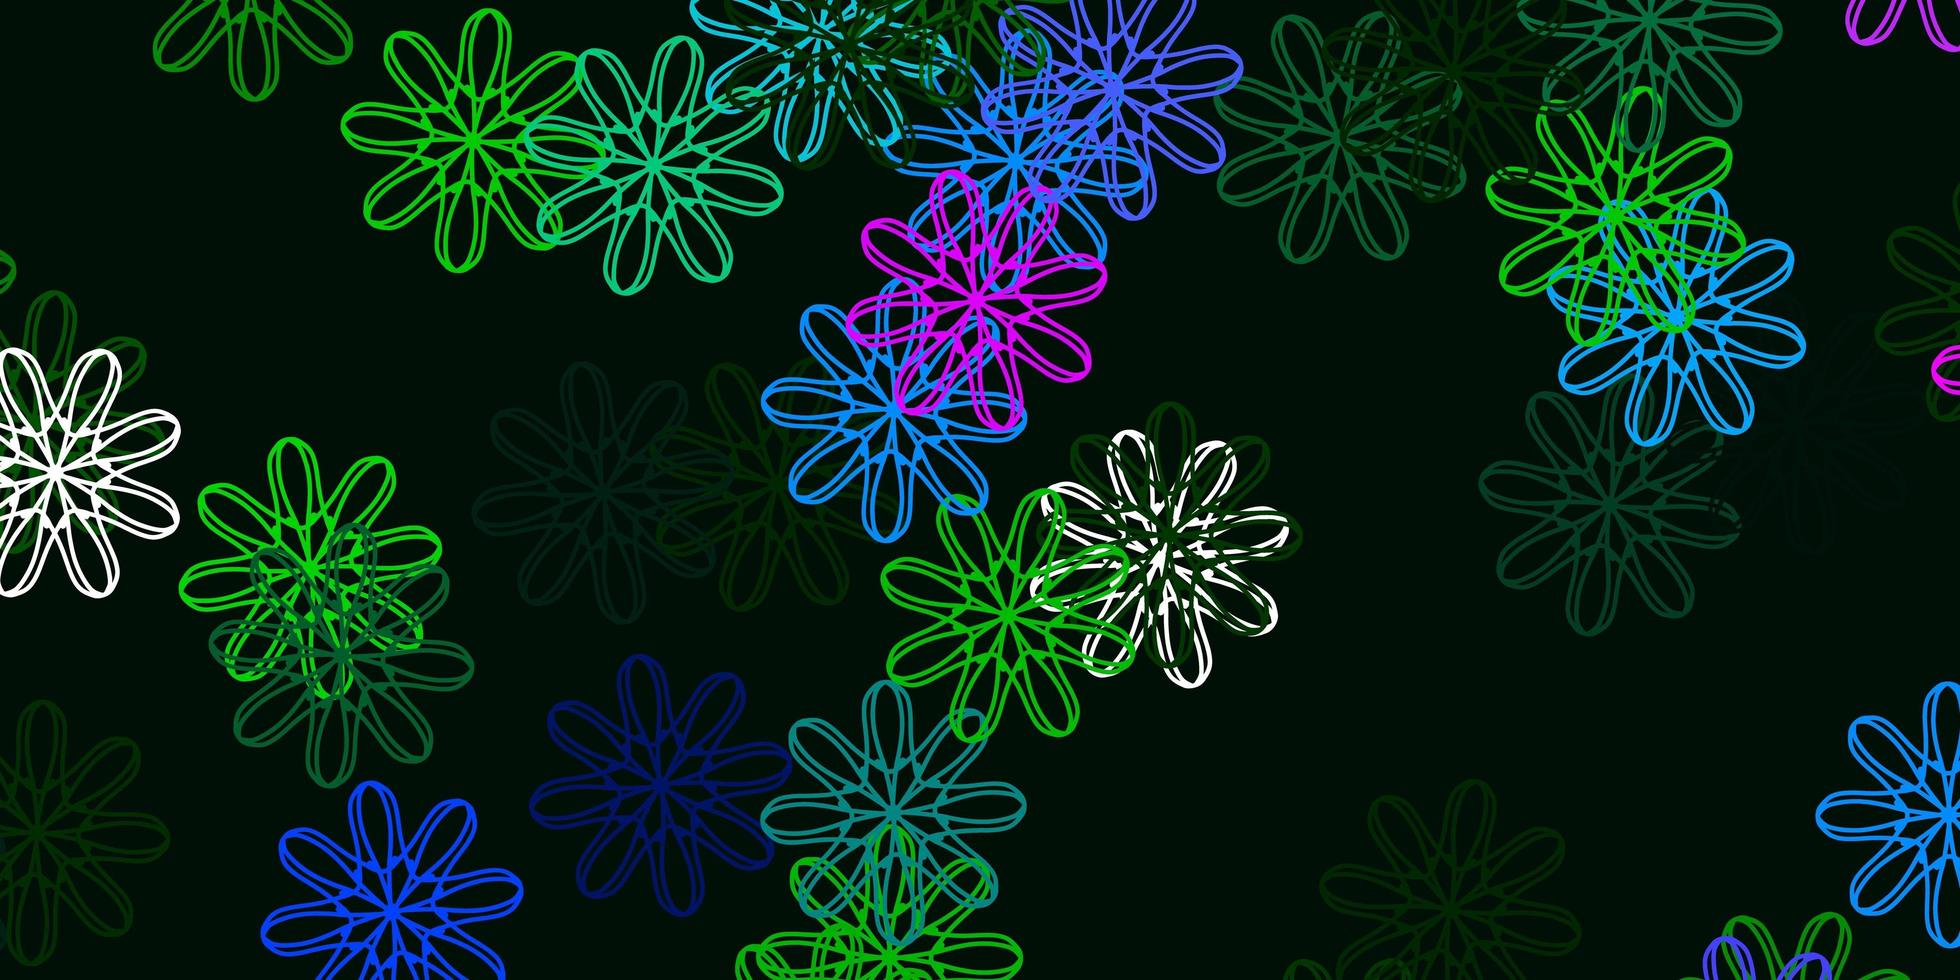 sfondo doodle vettoriale rosa chiaro, verde con fiori.